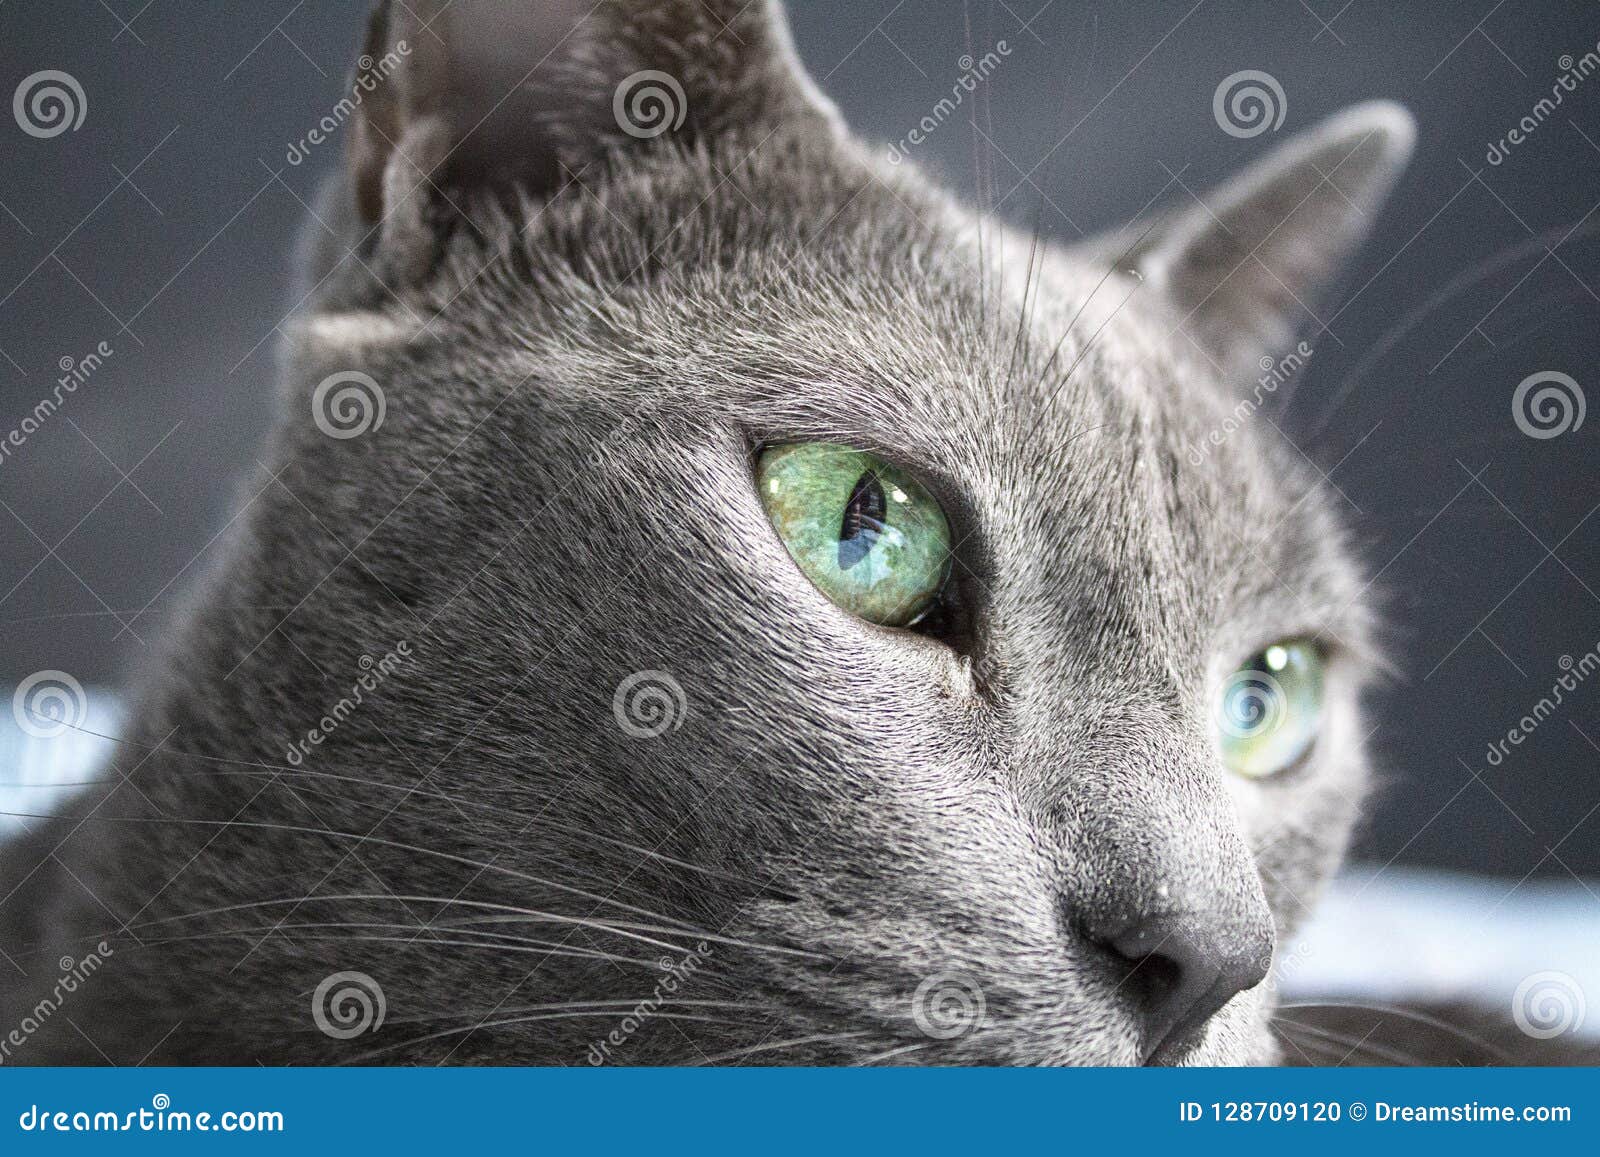 korat cat blue korat kitten